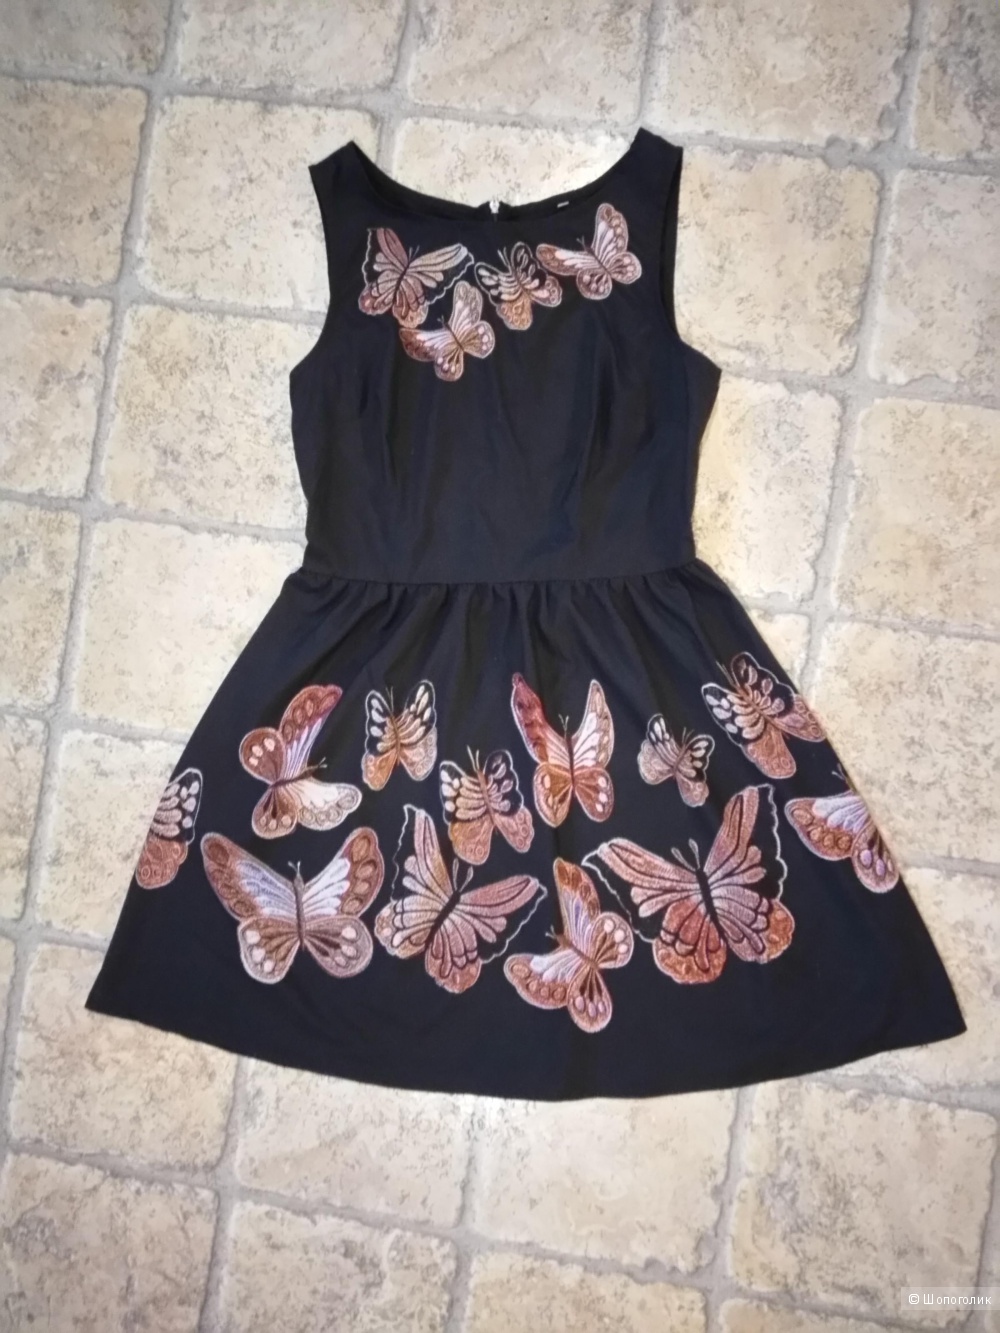 Лёгкое летнее платье, чёрного цвета с бабочками, размера М.